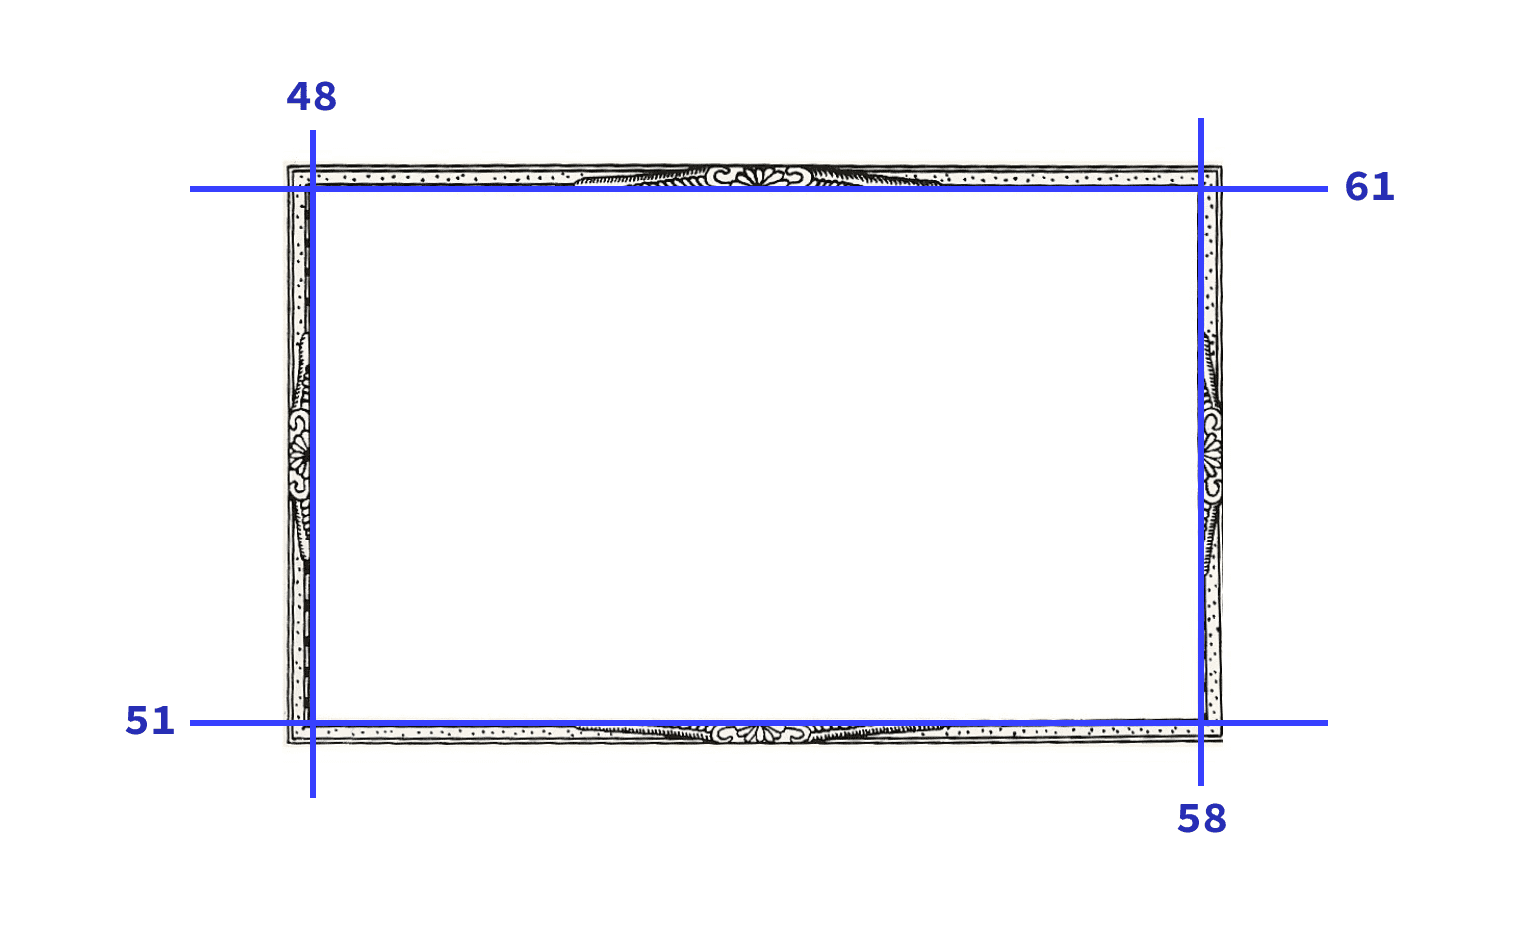 Image utilisée dans la démonstration, avec les quatre secteurs représentés par des lignes bleues